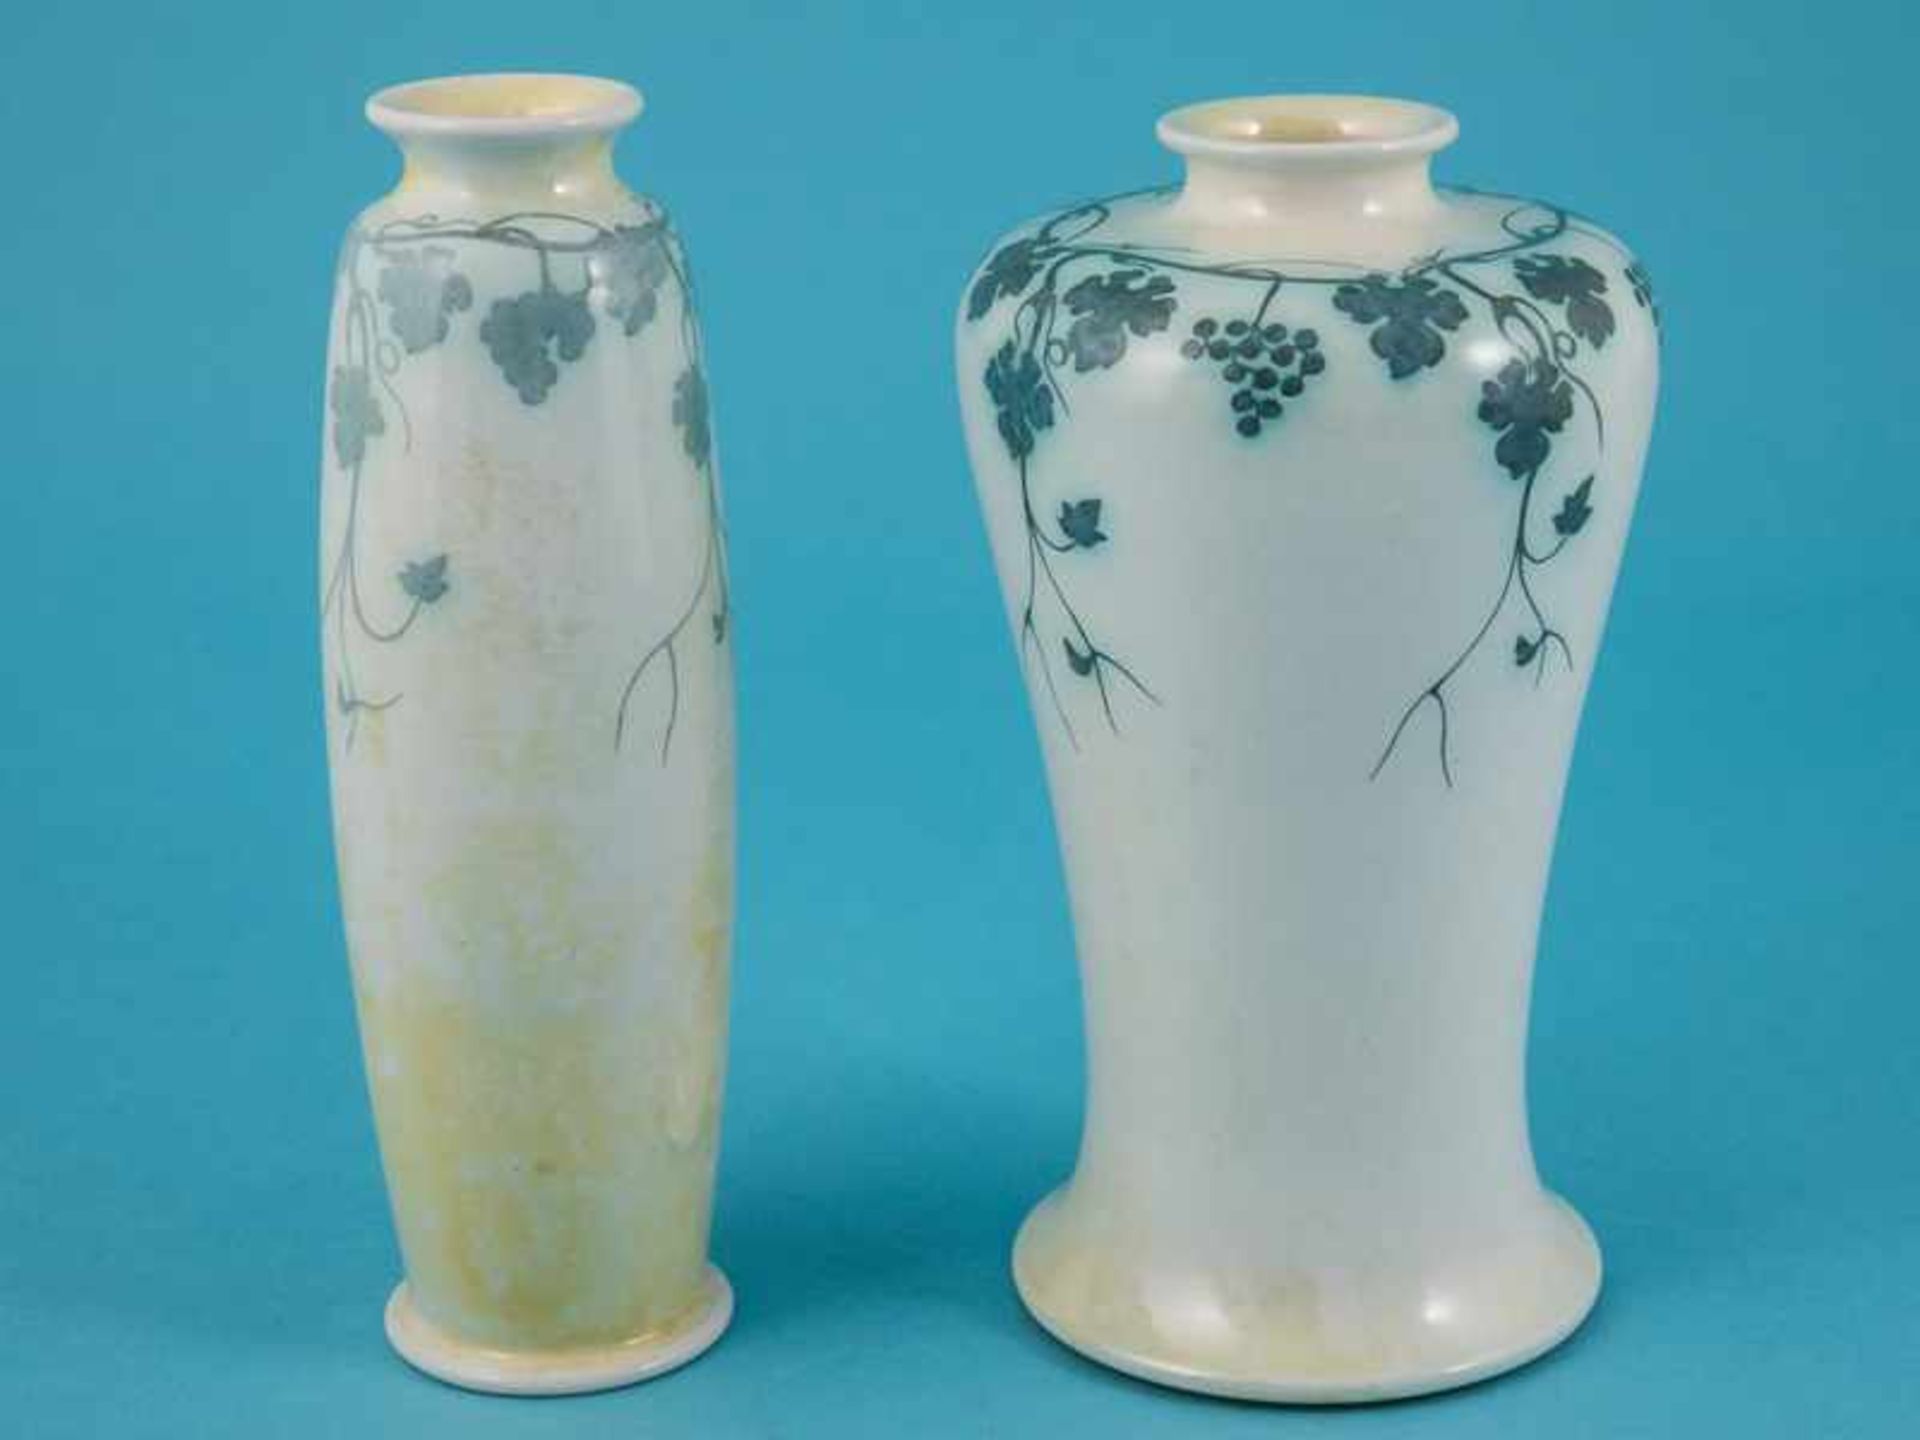 2 Jugendstil-/ Arts and crafts-Vasen, Ruskin Pottery, West Smethwick (England), 1907 und 1910. - Image 2 of 4